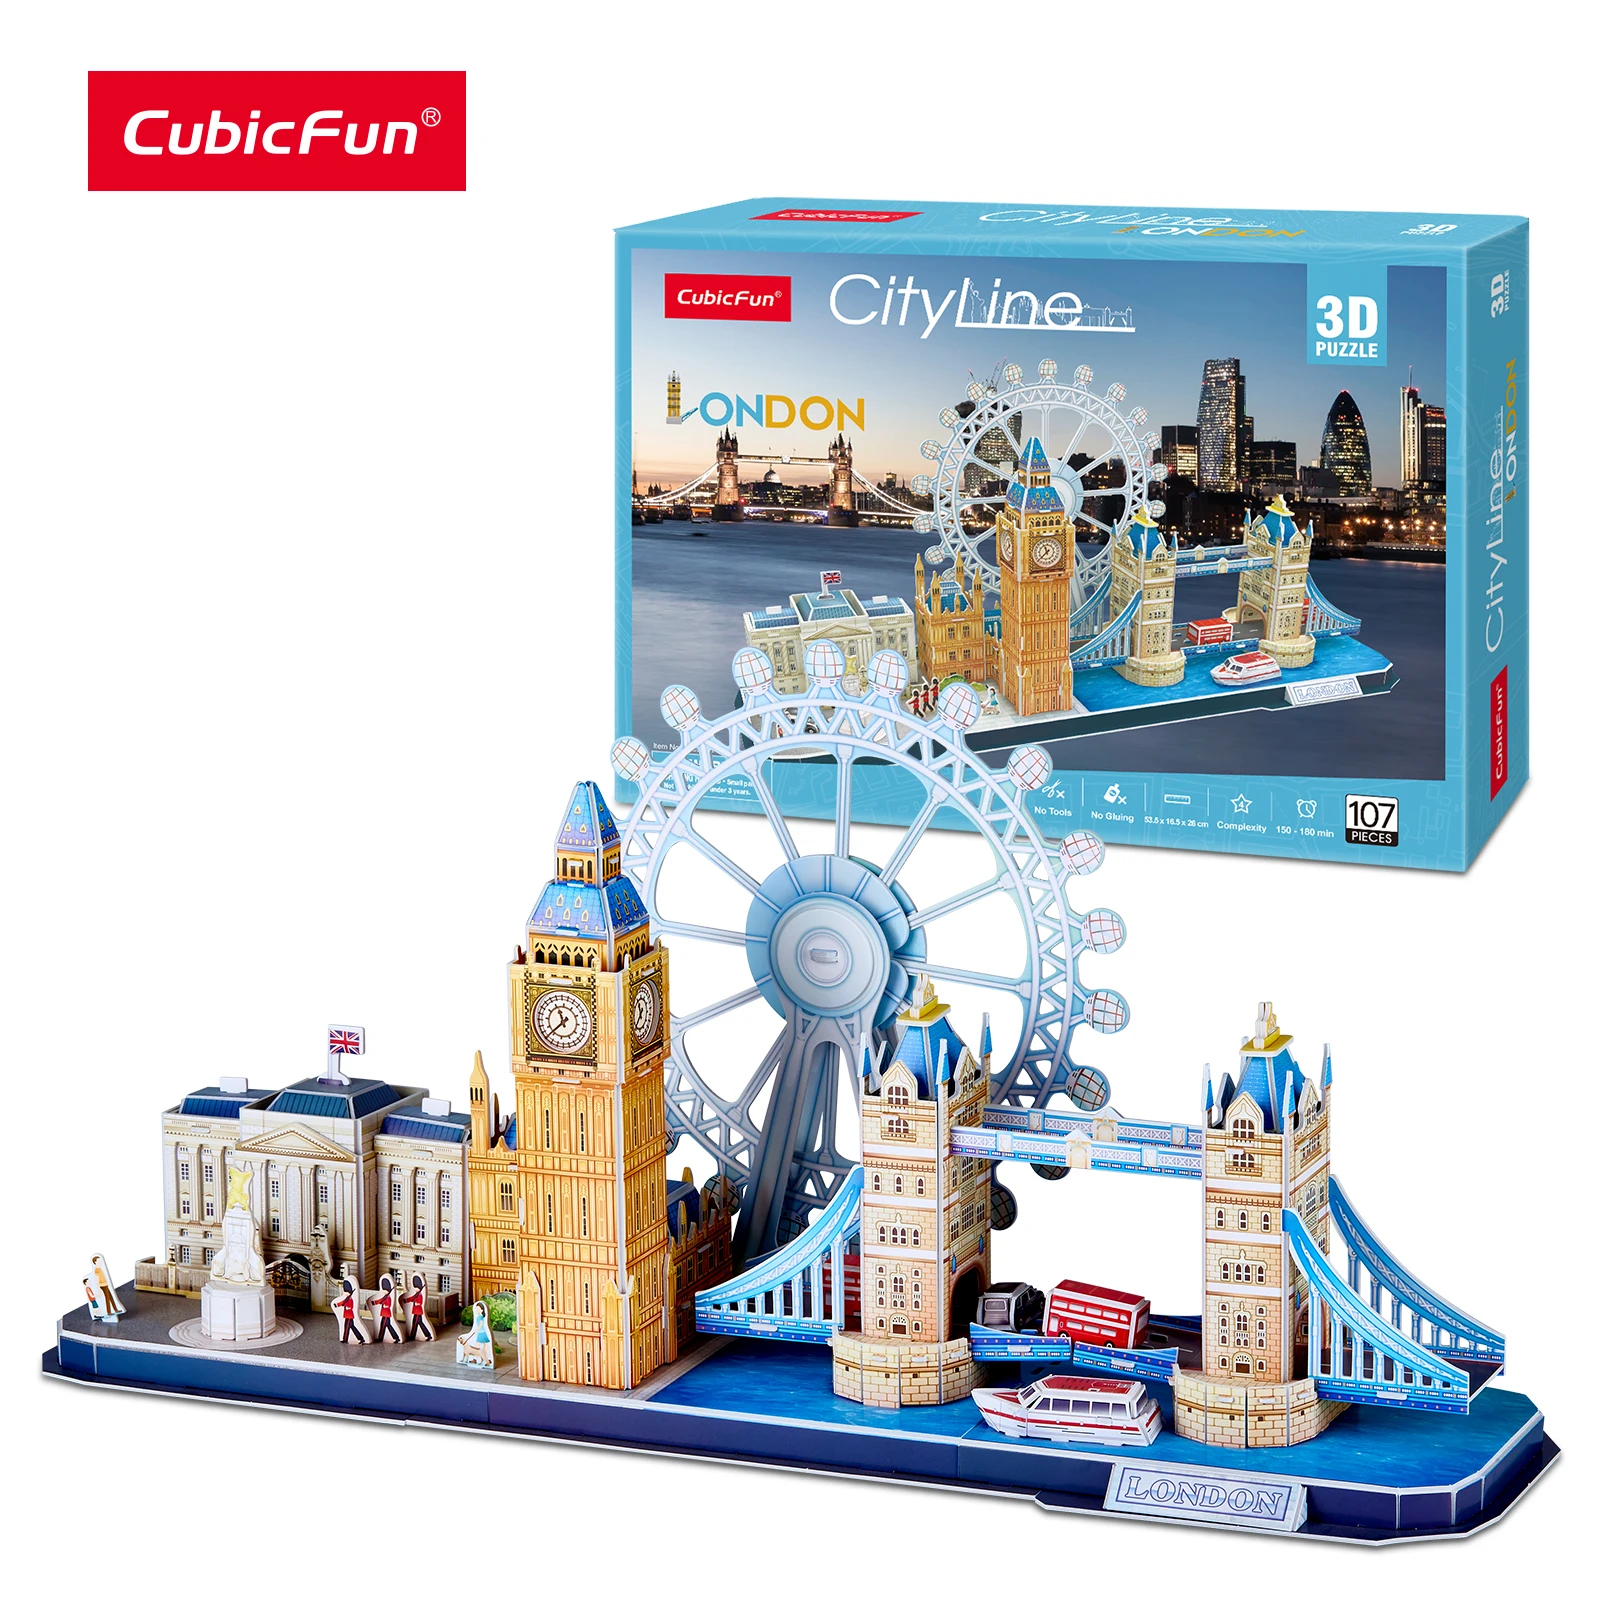 3d Puzzle Cityline Londres Cubic Fun Tower Bridge Big Ben Buckingham City Line 